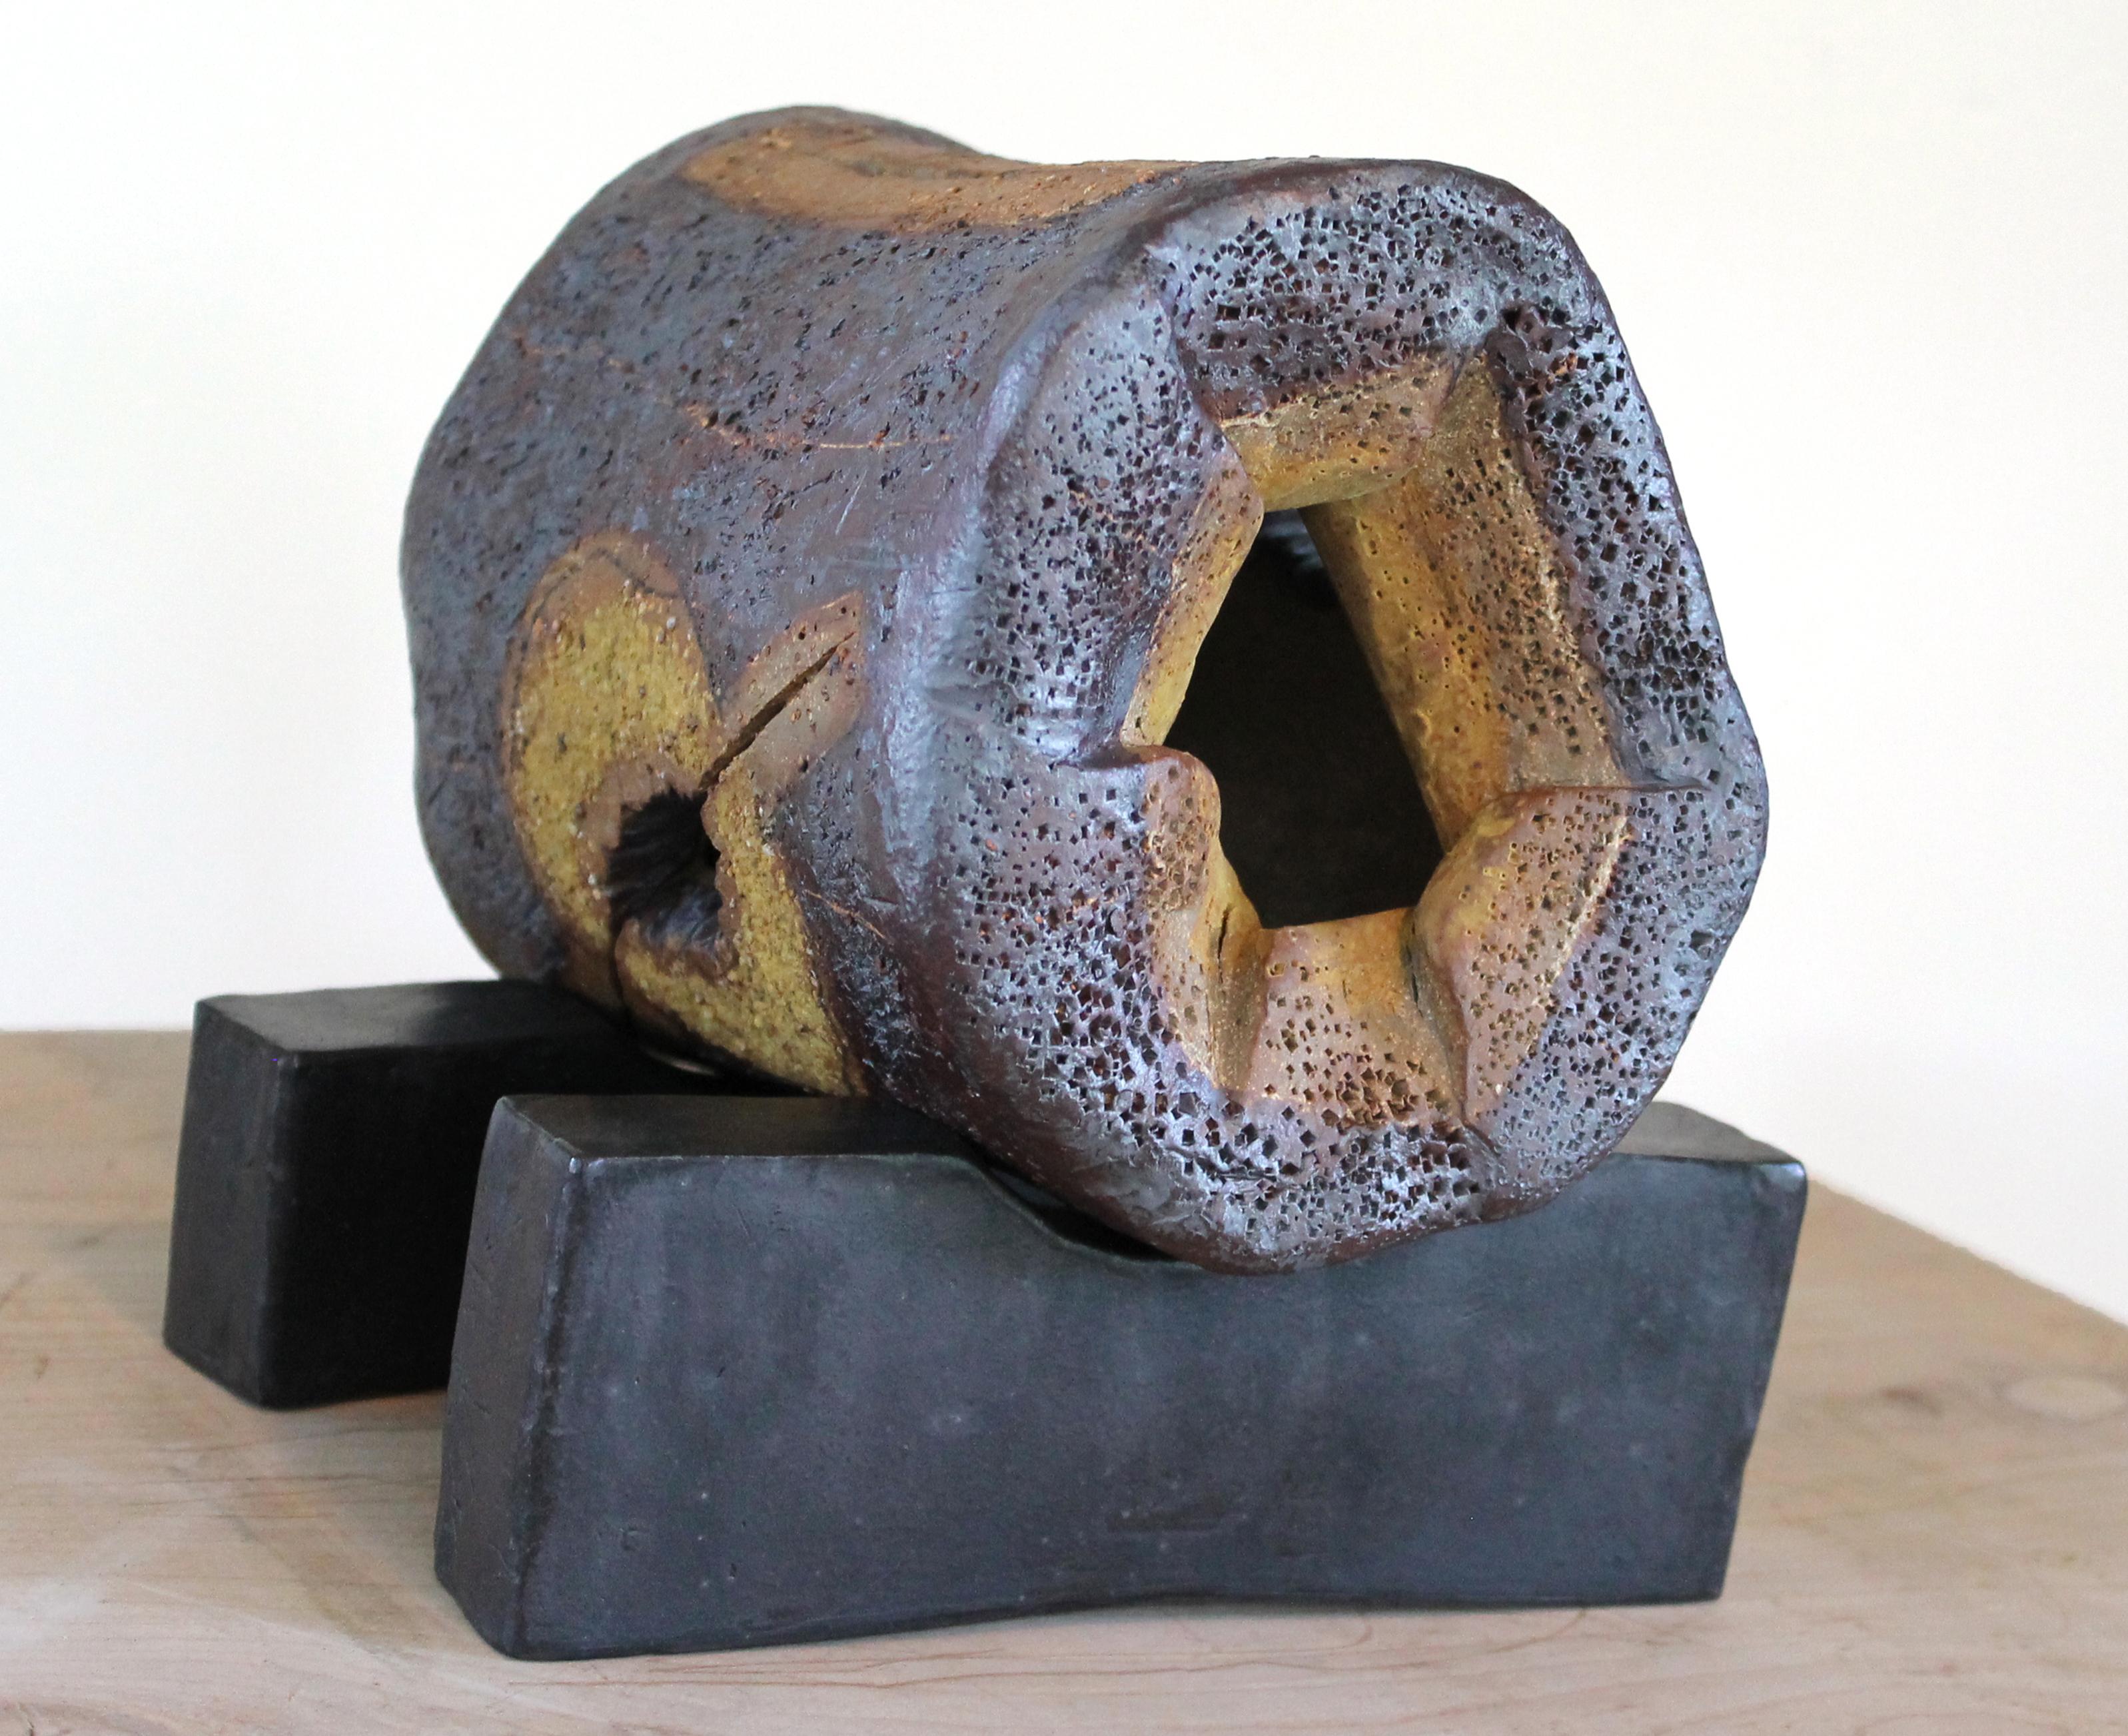 OBJET ÉROTIQUE, une sculpture en céramique faite d'argile cuite à haute température et d'oxydes pigmentés, est une nouvelle œuvre de l'artiste Harold Wortsman. Il est installé avec les deux blocs de céramique visibles sur les photos. Notez les